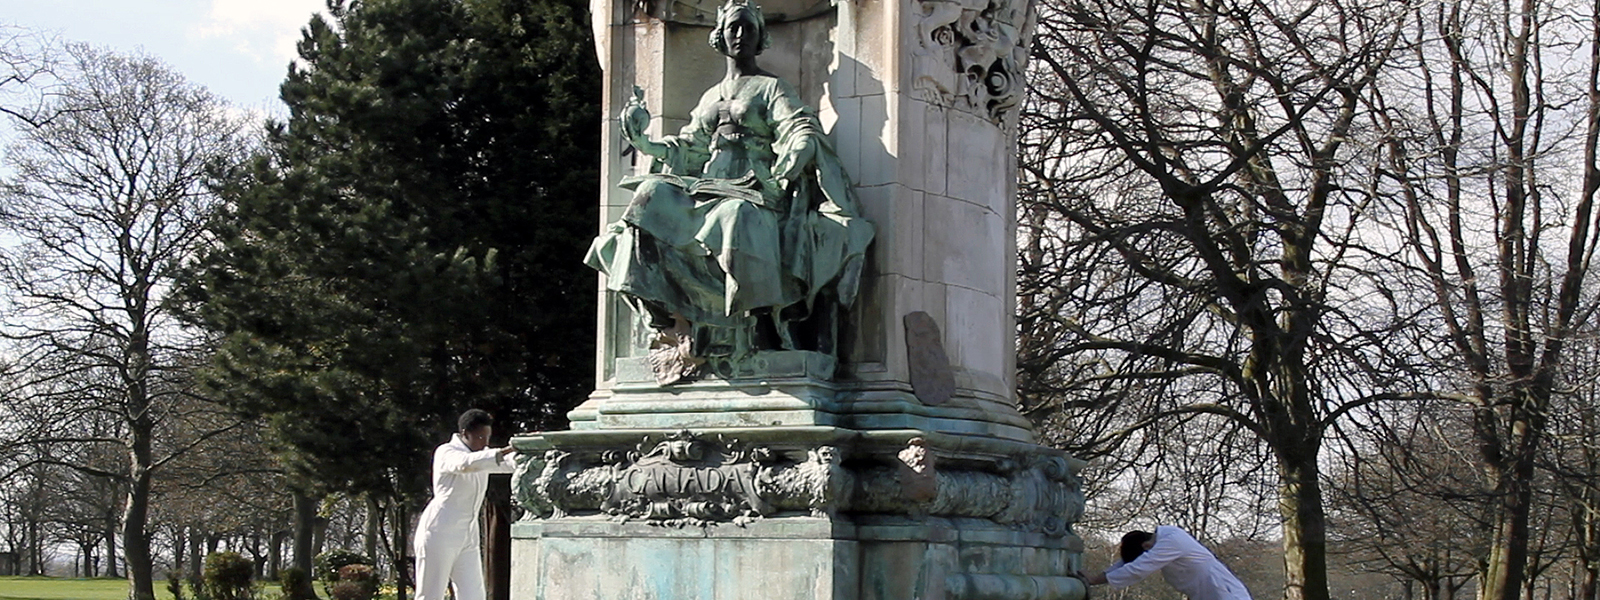 Memorial to Queen Victoria statue